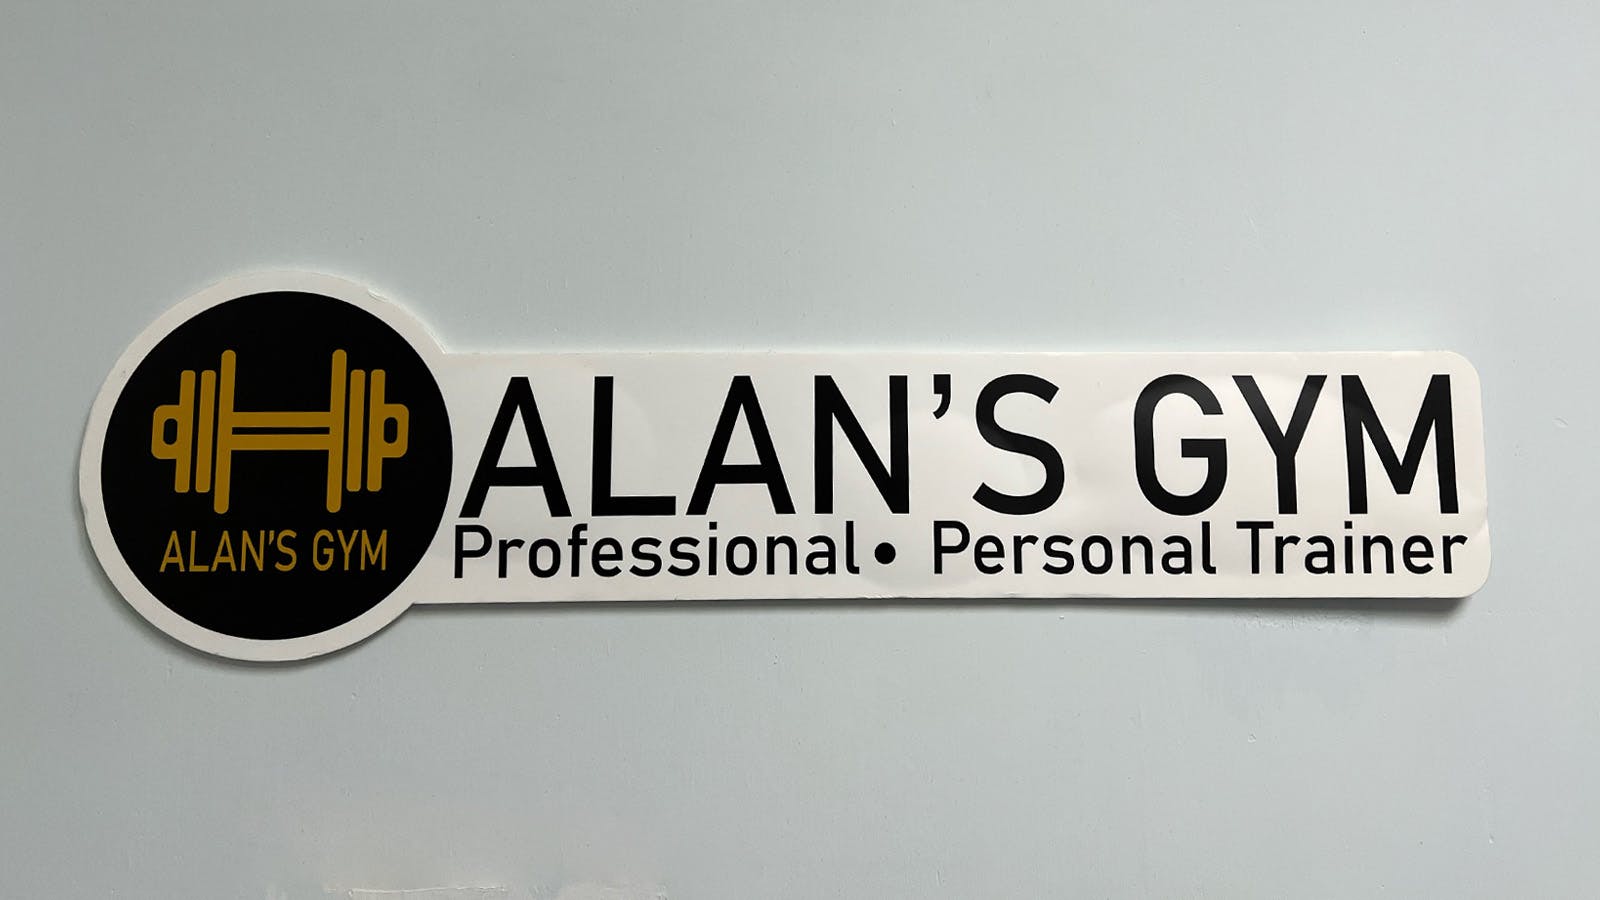 Alan's Gym